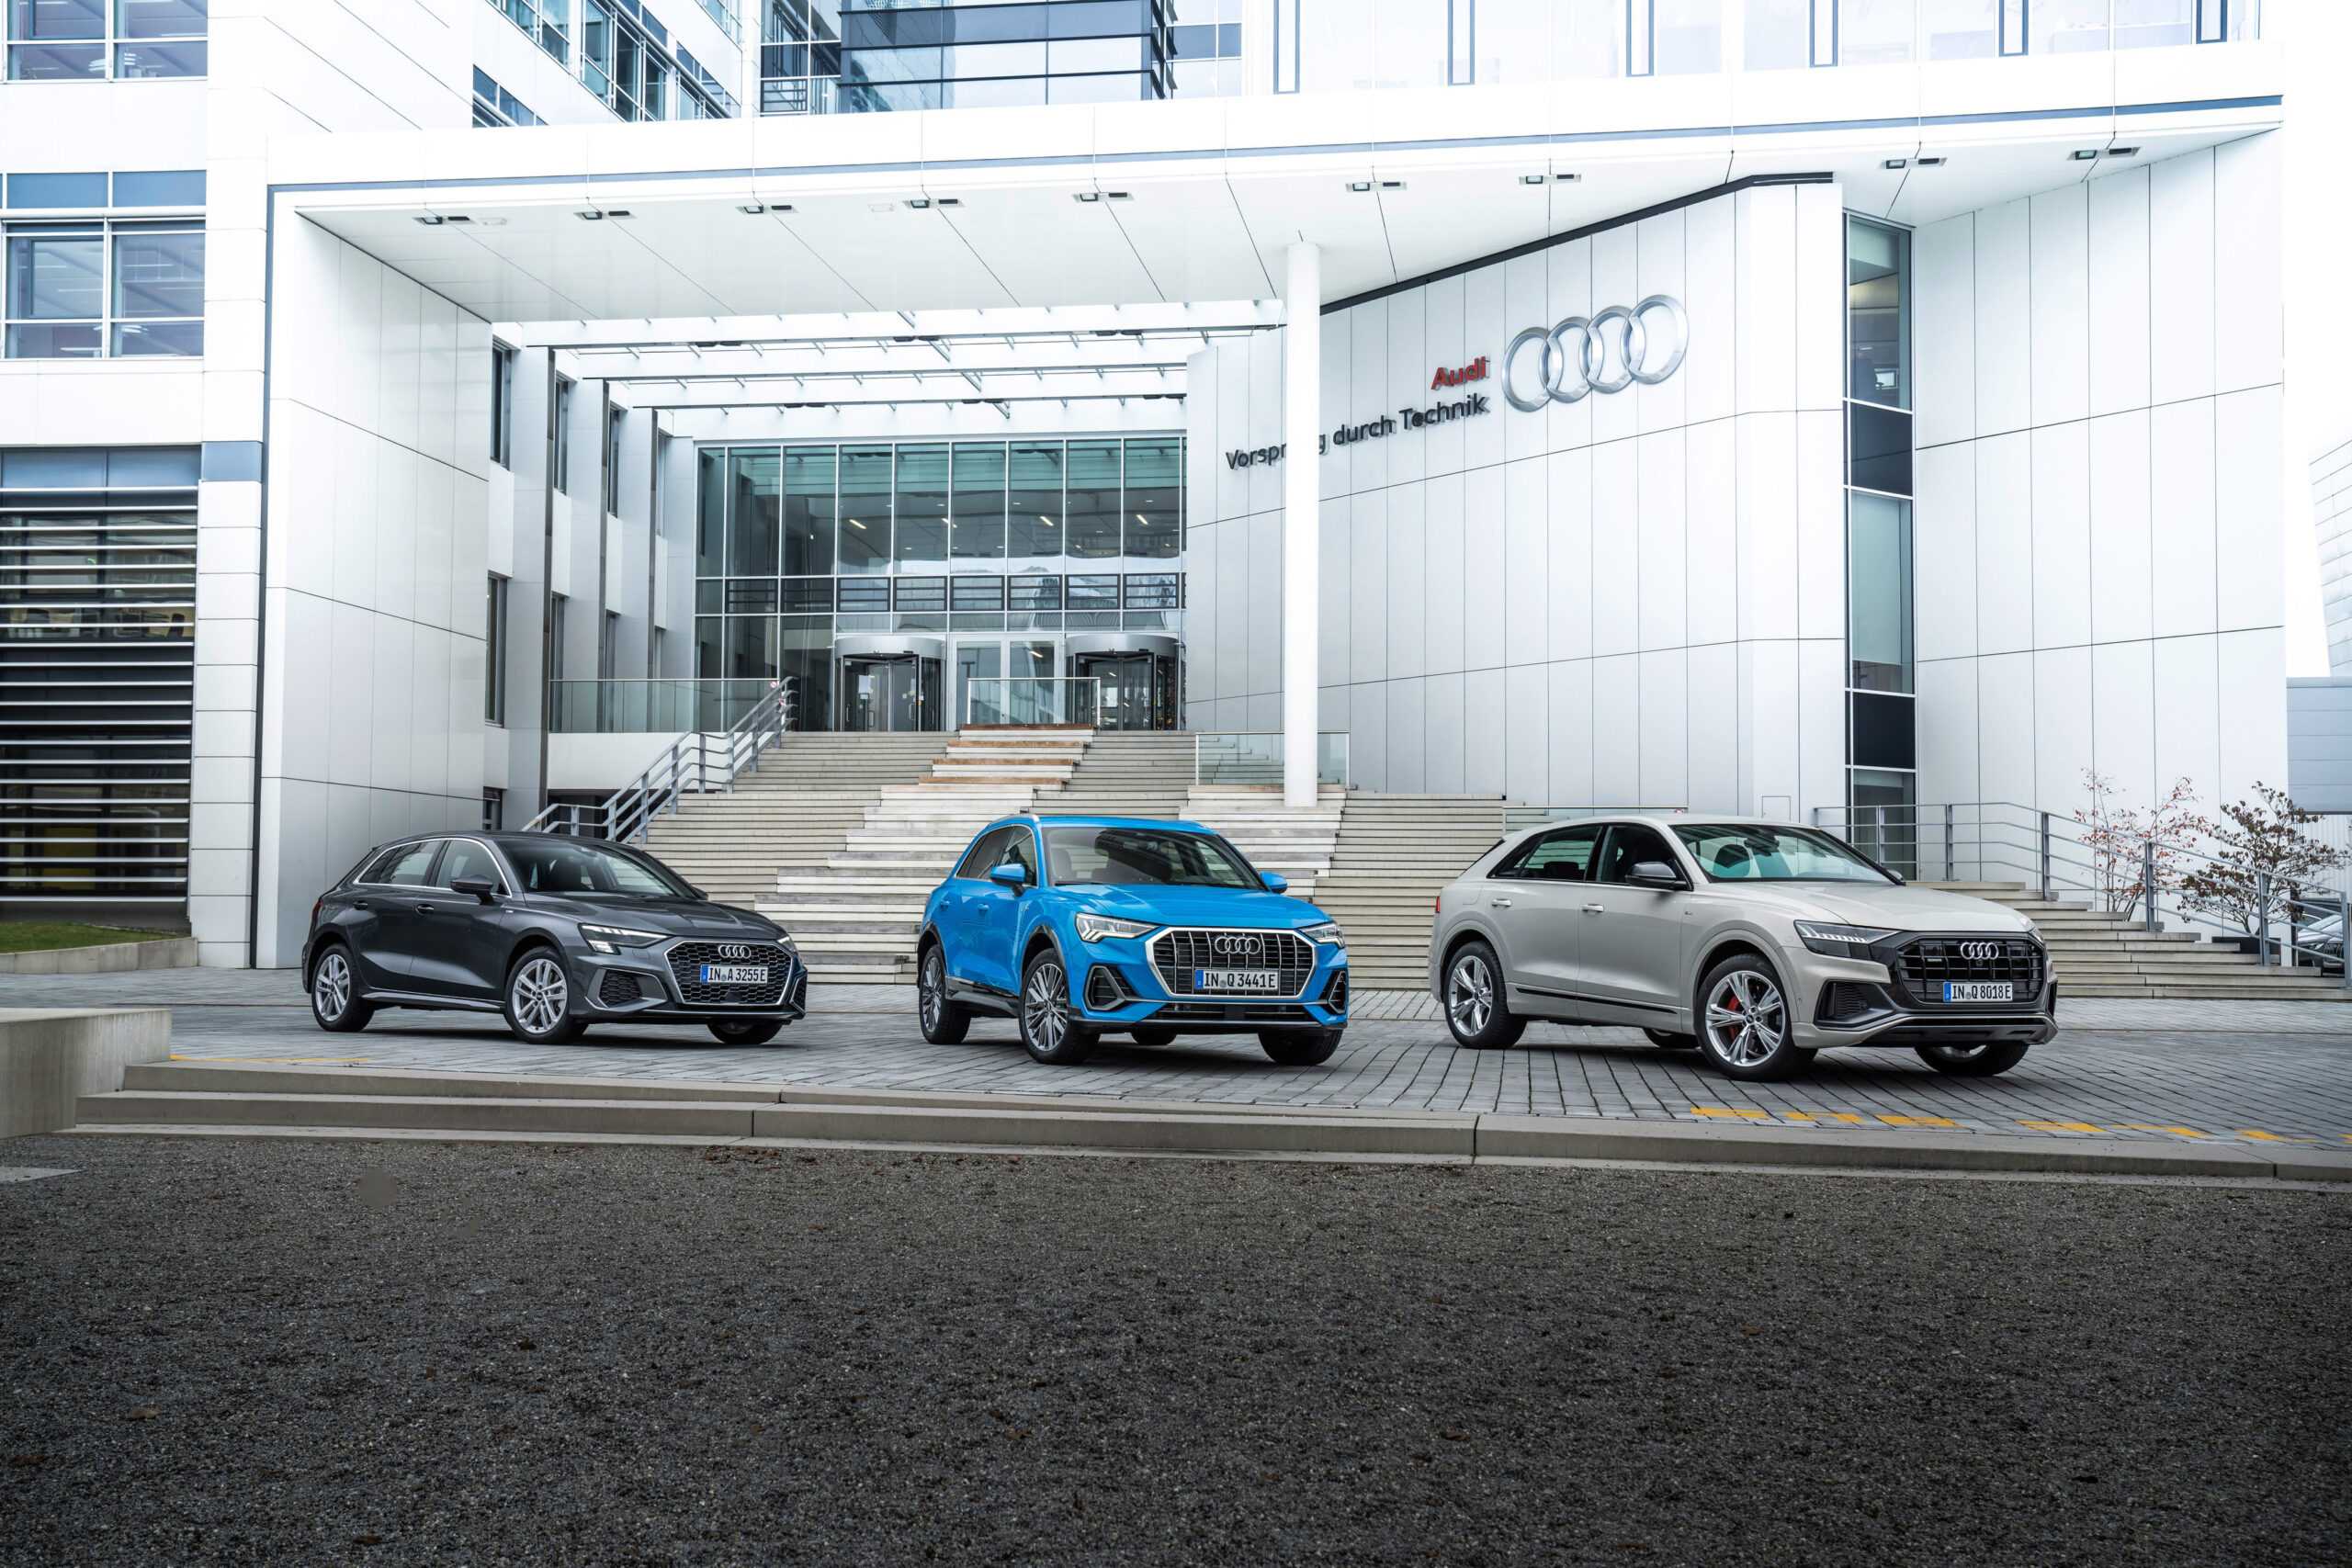 Audi uppfyllde de europeiska koldioxidmålen för fordonsflottan